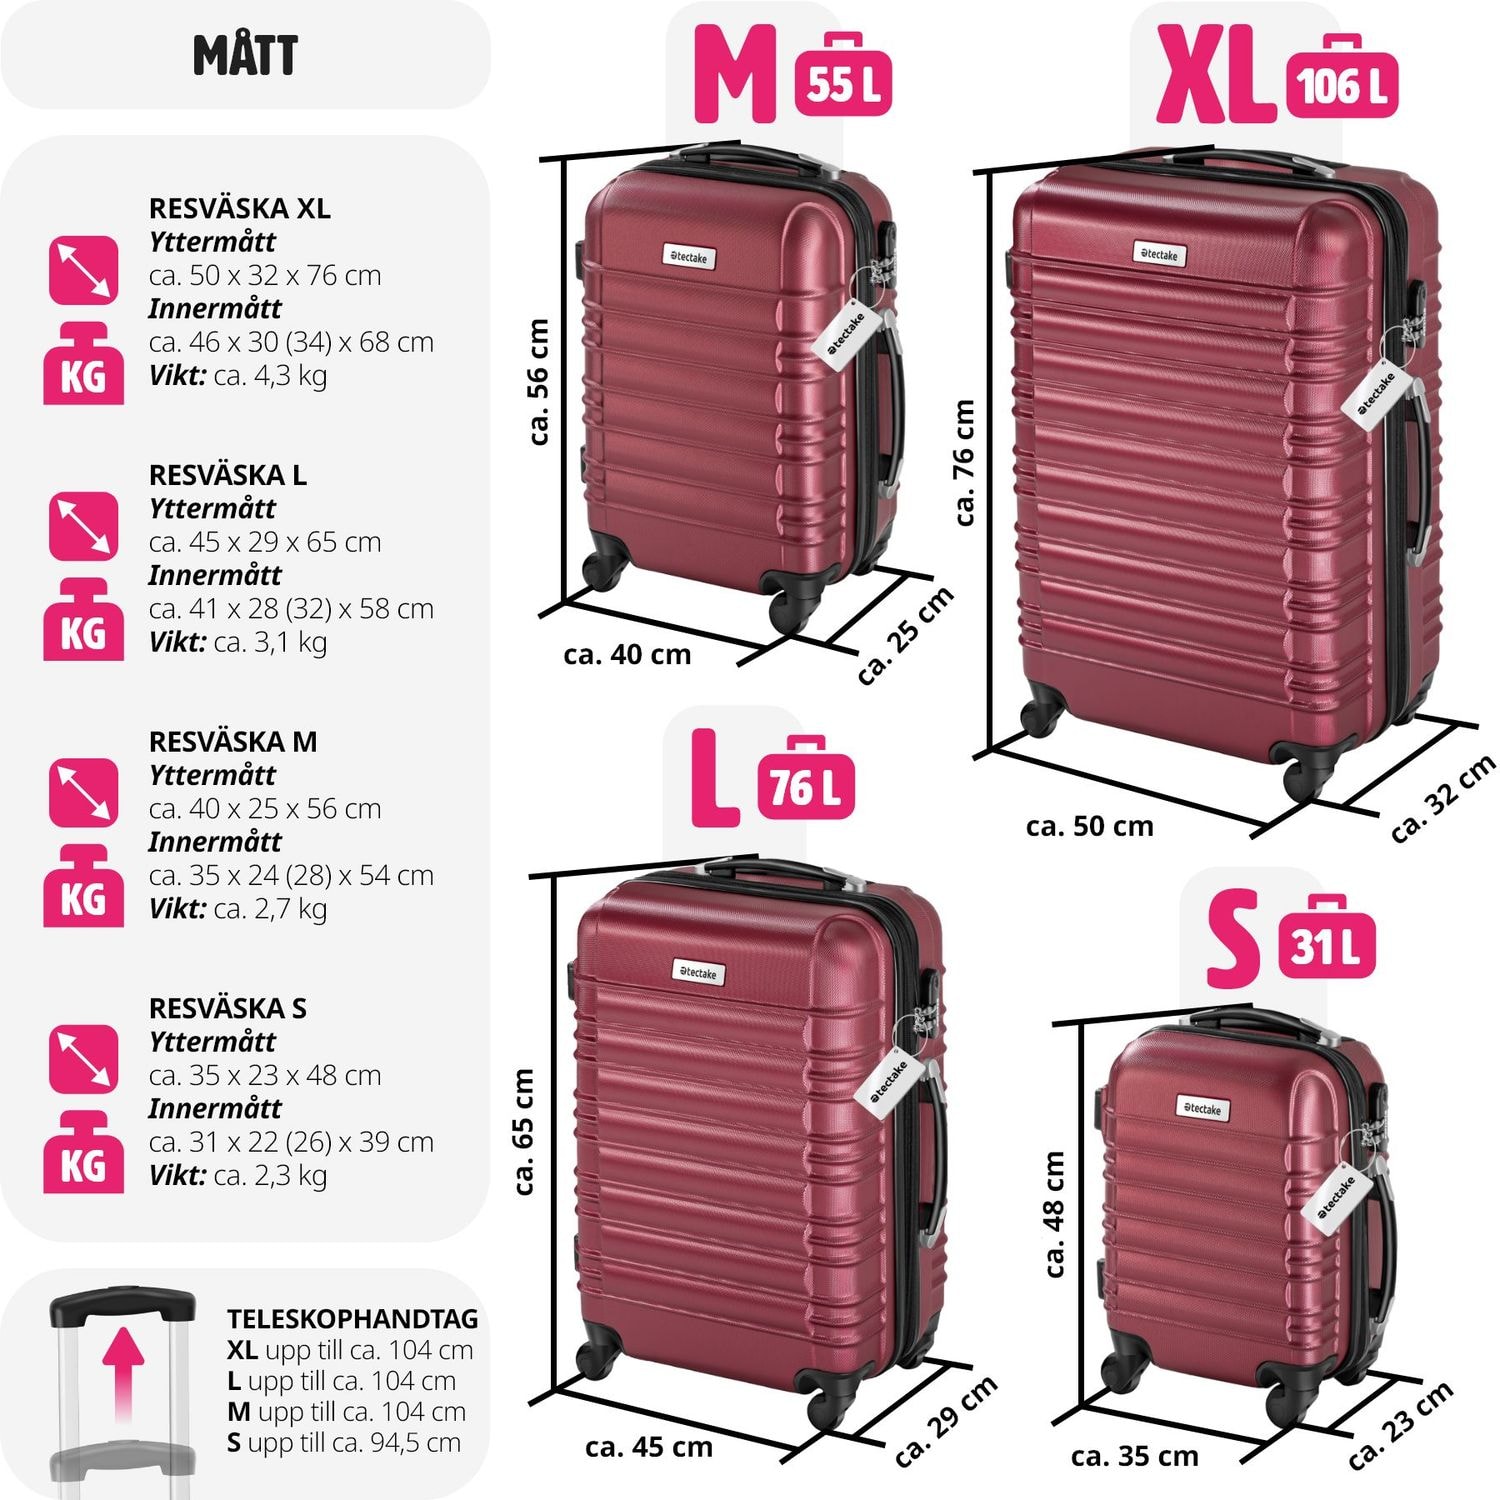 Resväskeset Mila - 4 resväskor, bagage med bagagevåg och namntaggar - vinröd (5 av 12)